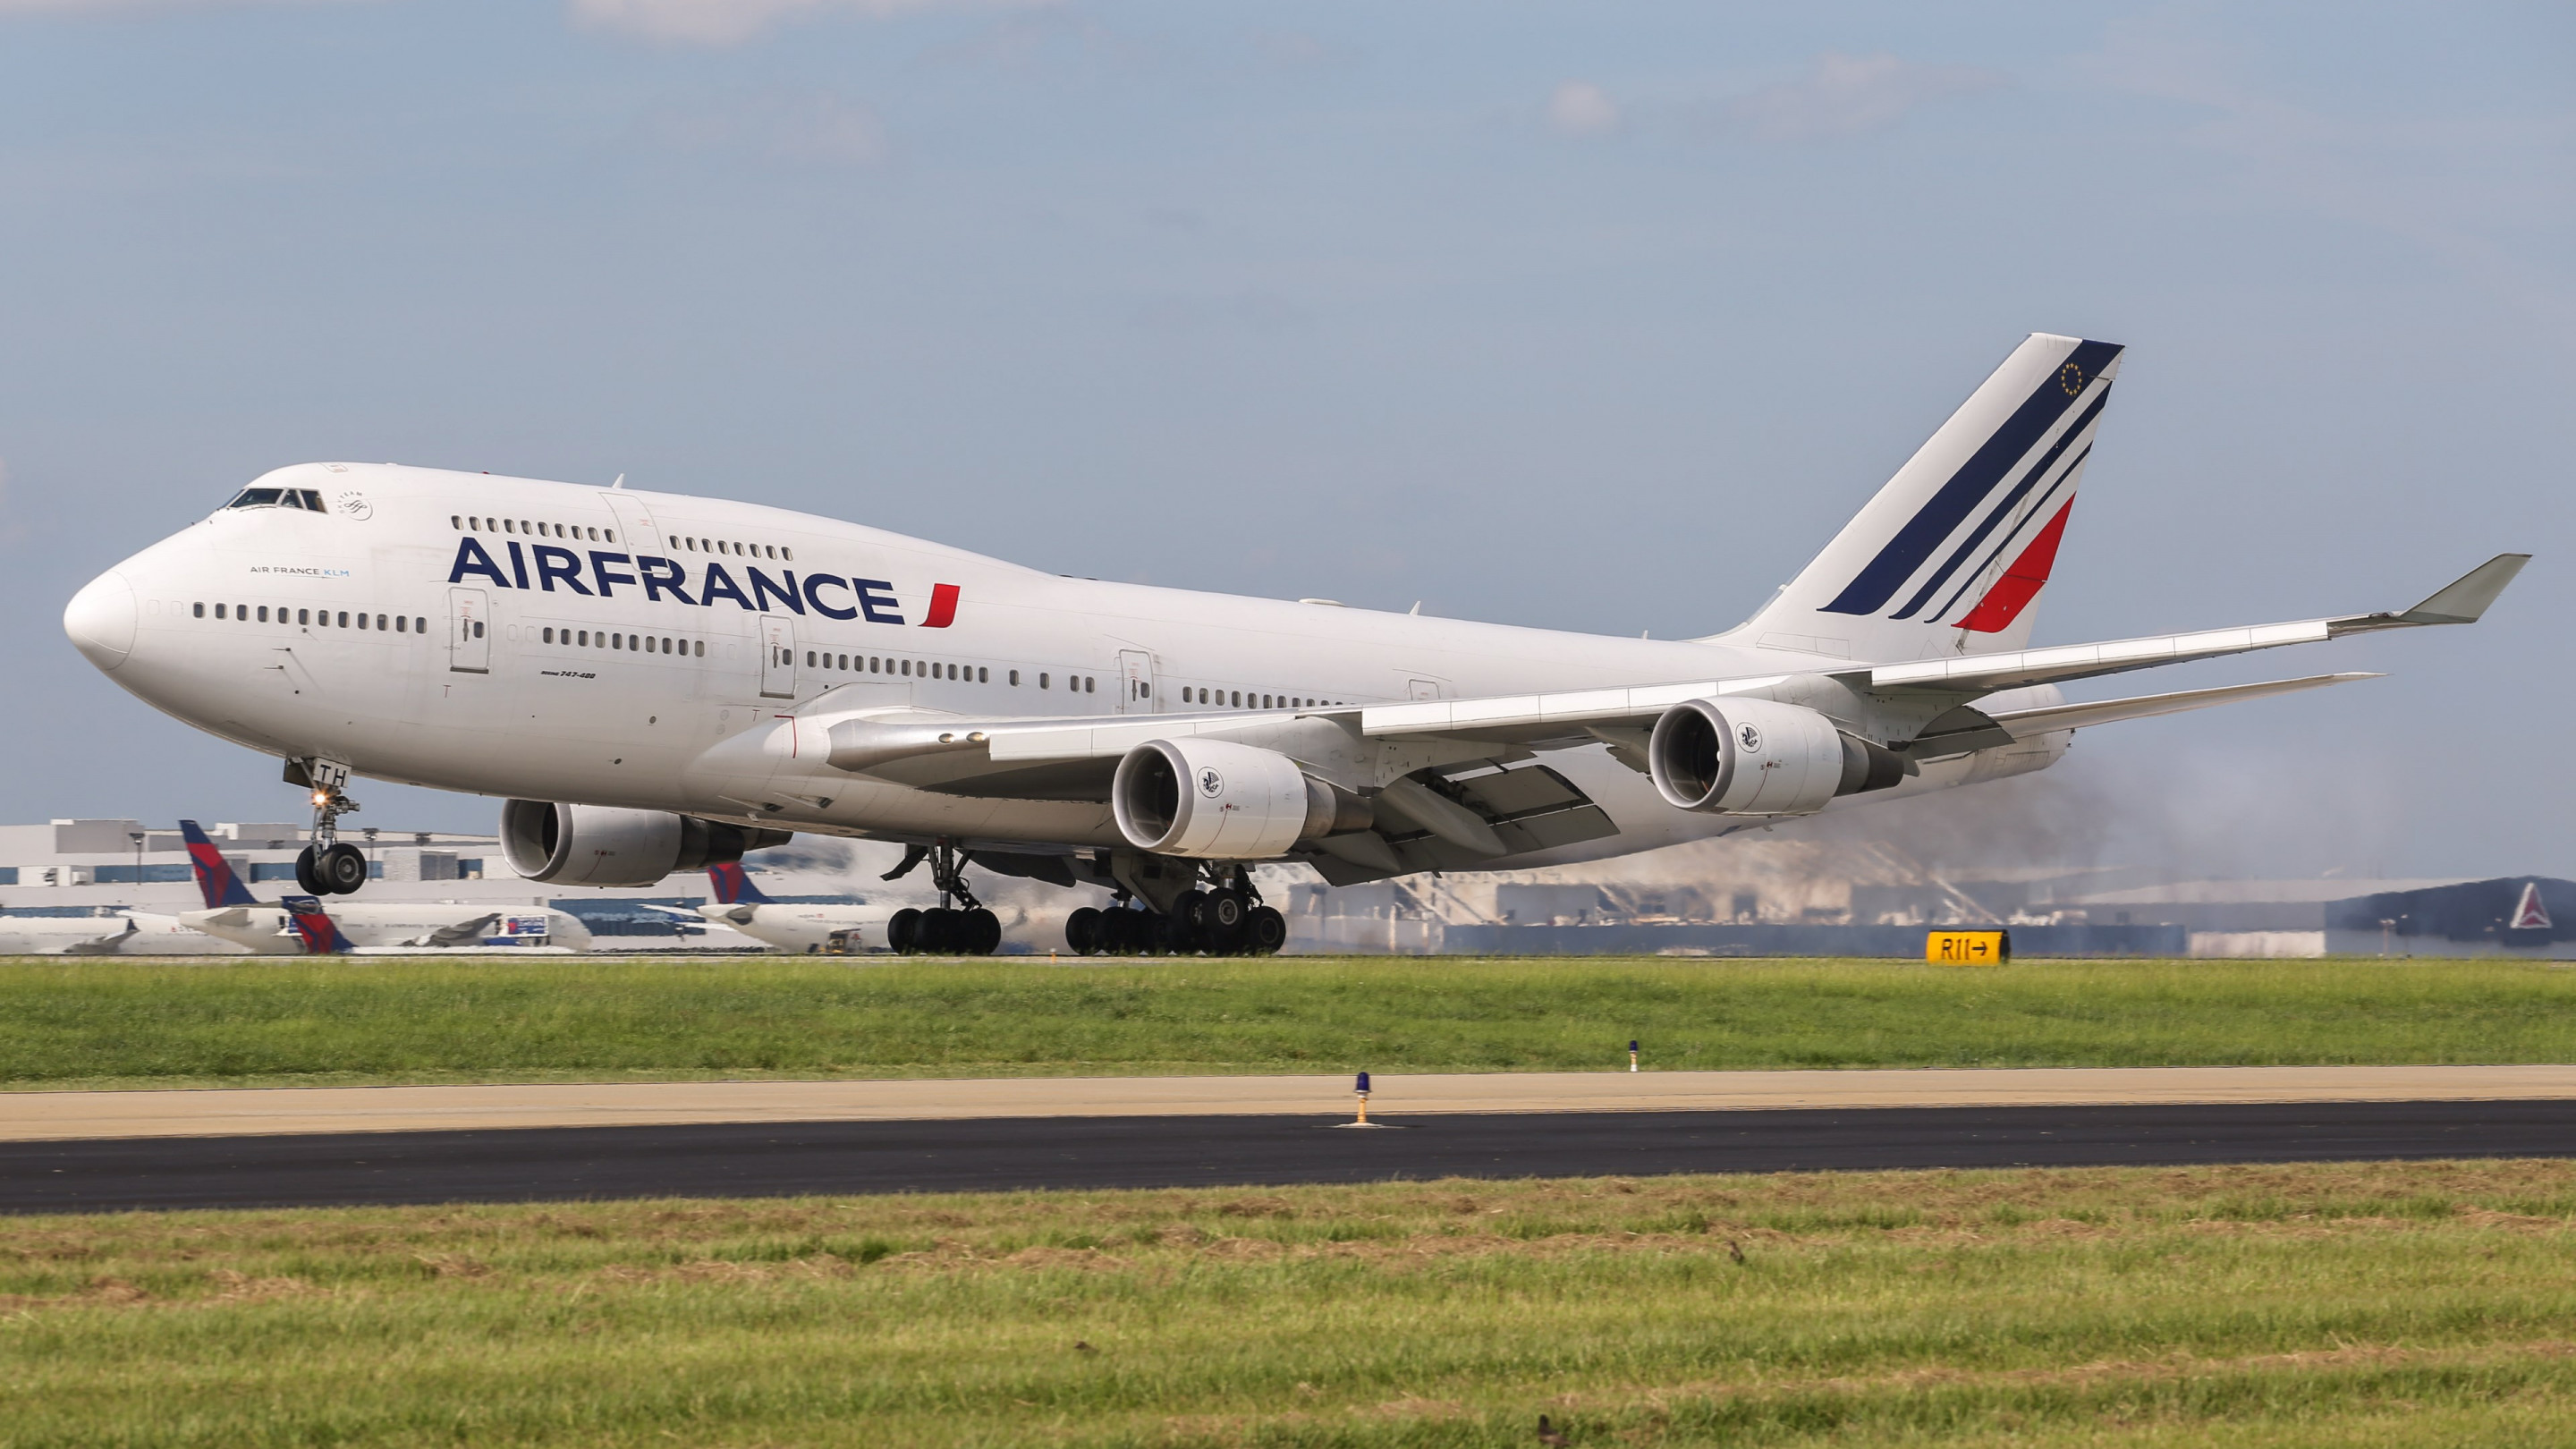 Air France Boeing 747 wallpaper 2880x1620